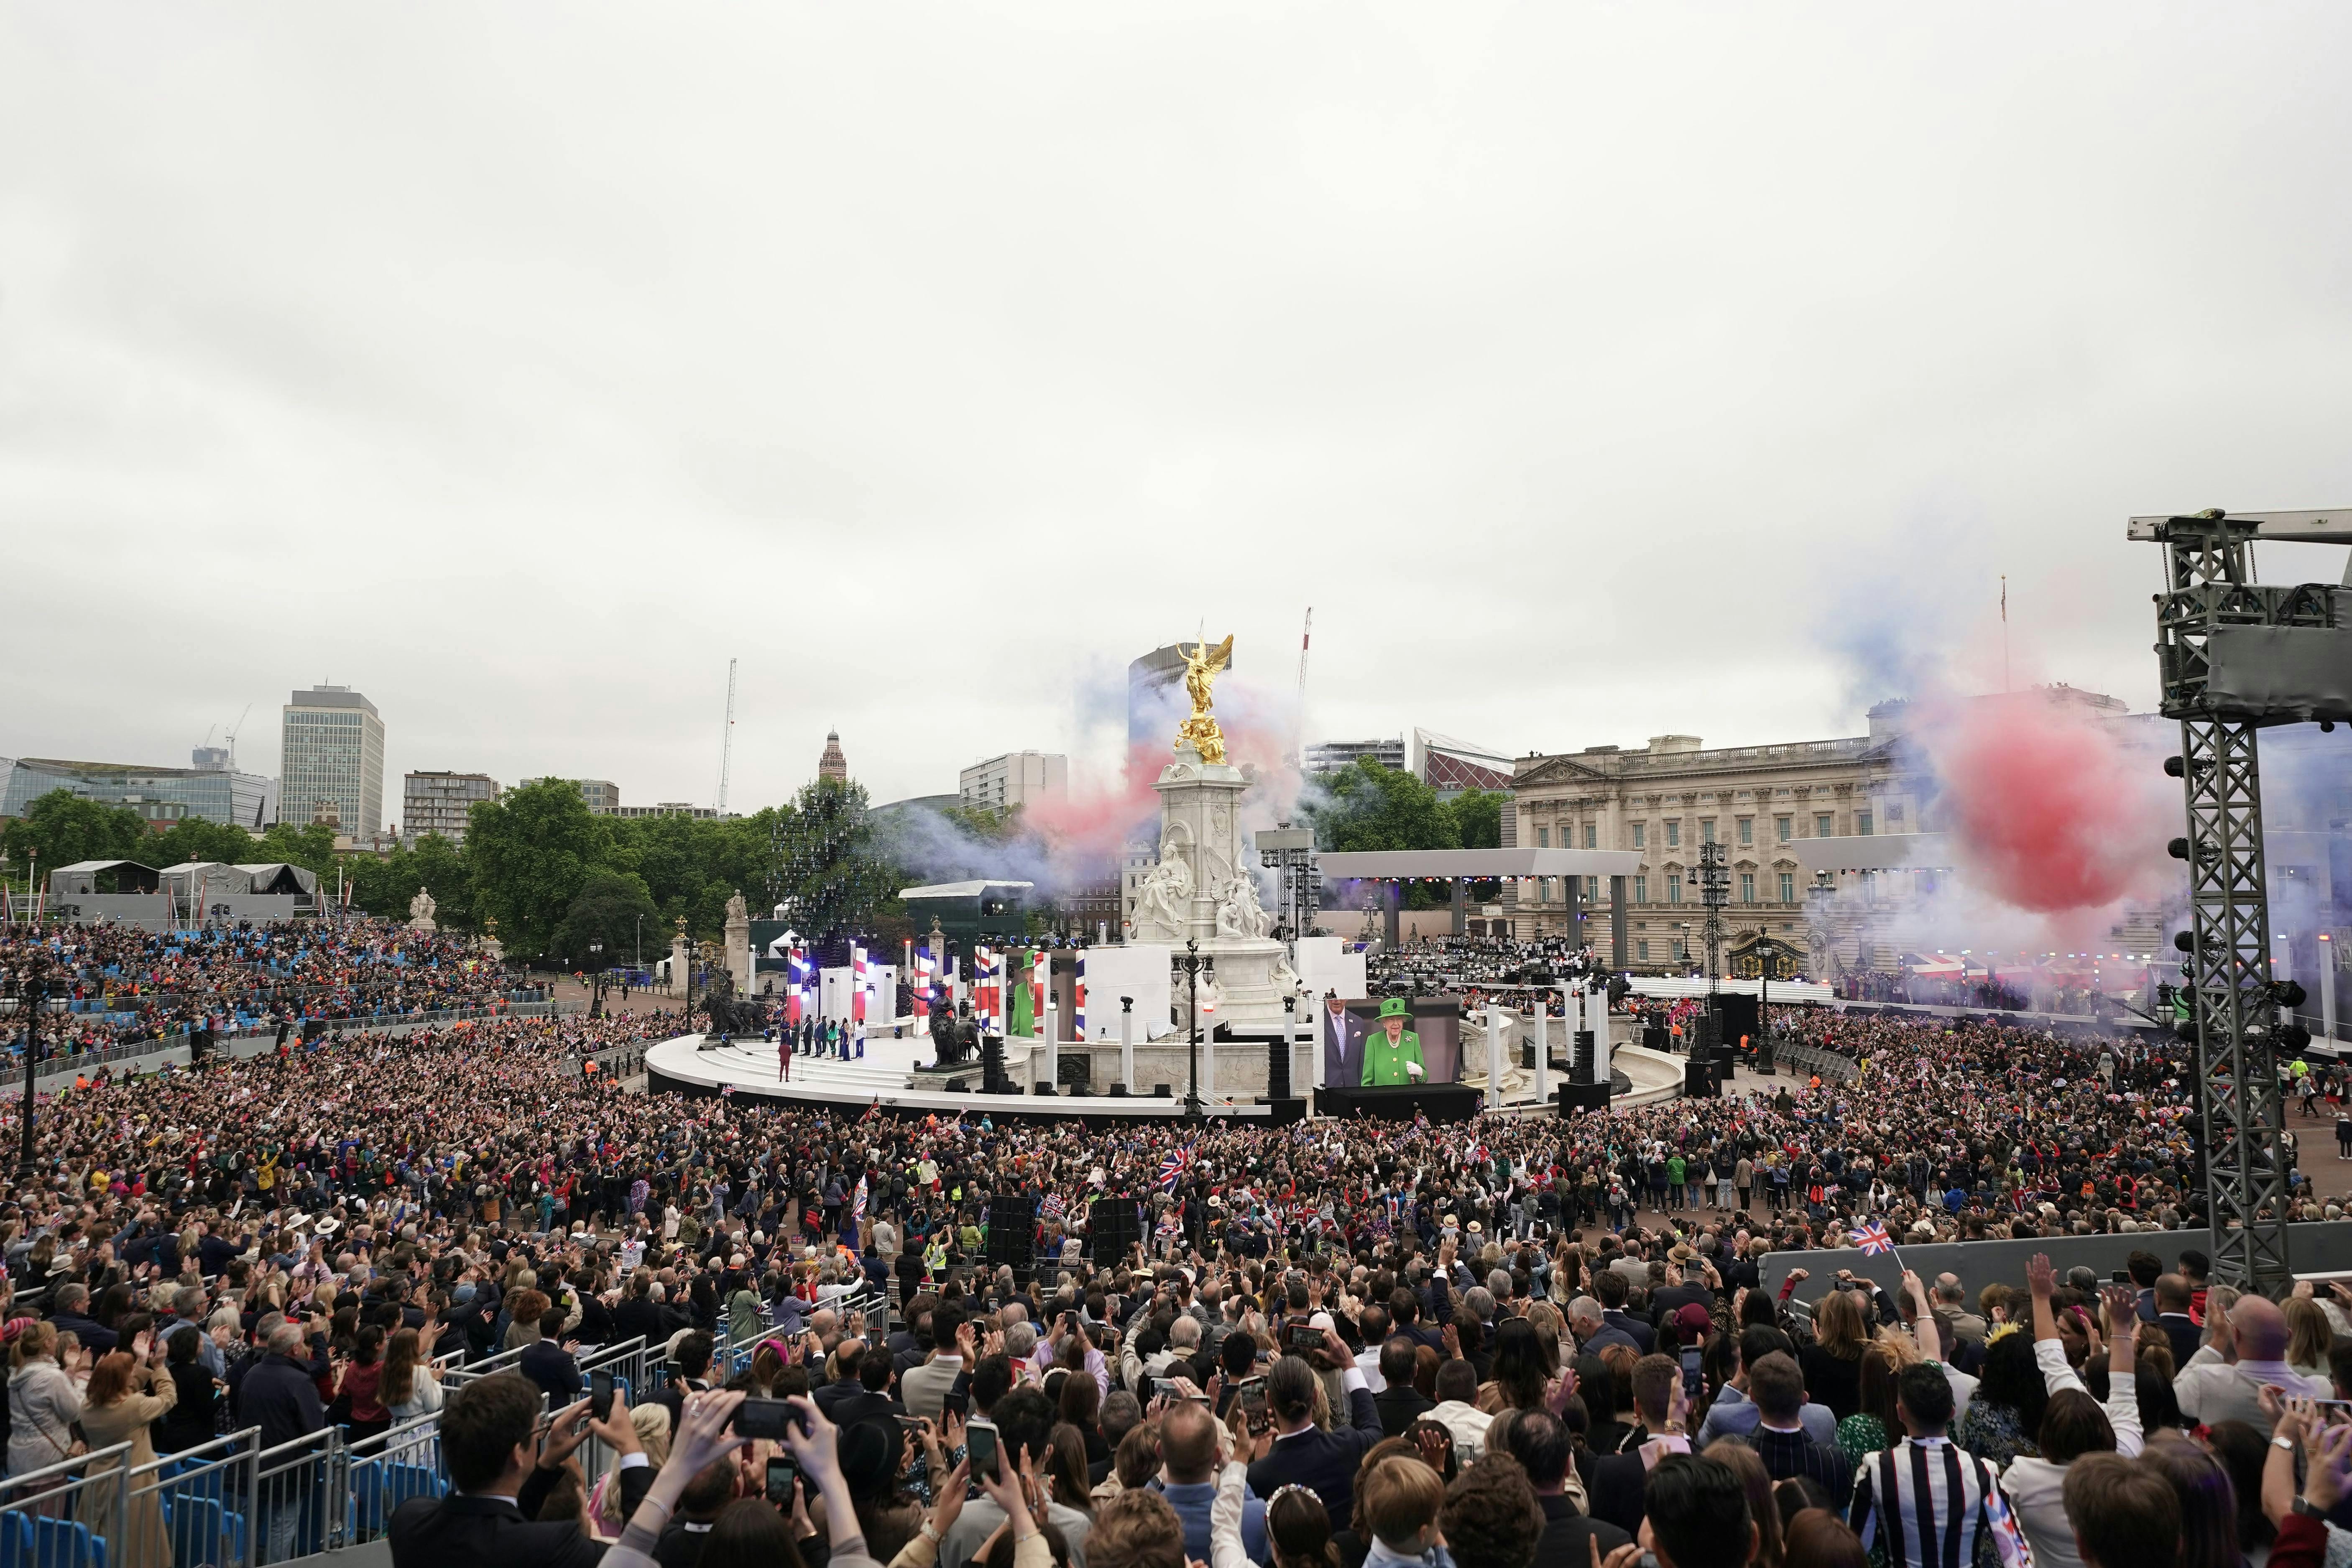 Der var fyldt med mennesker ude foran Buckingham Palace søndag.
